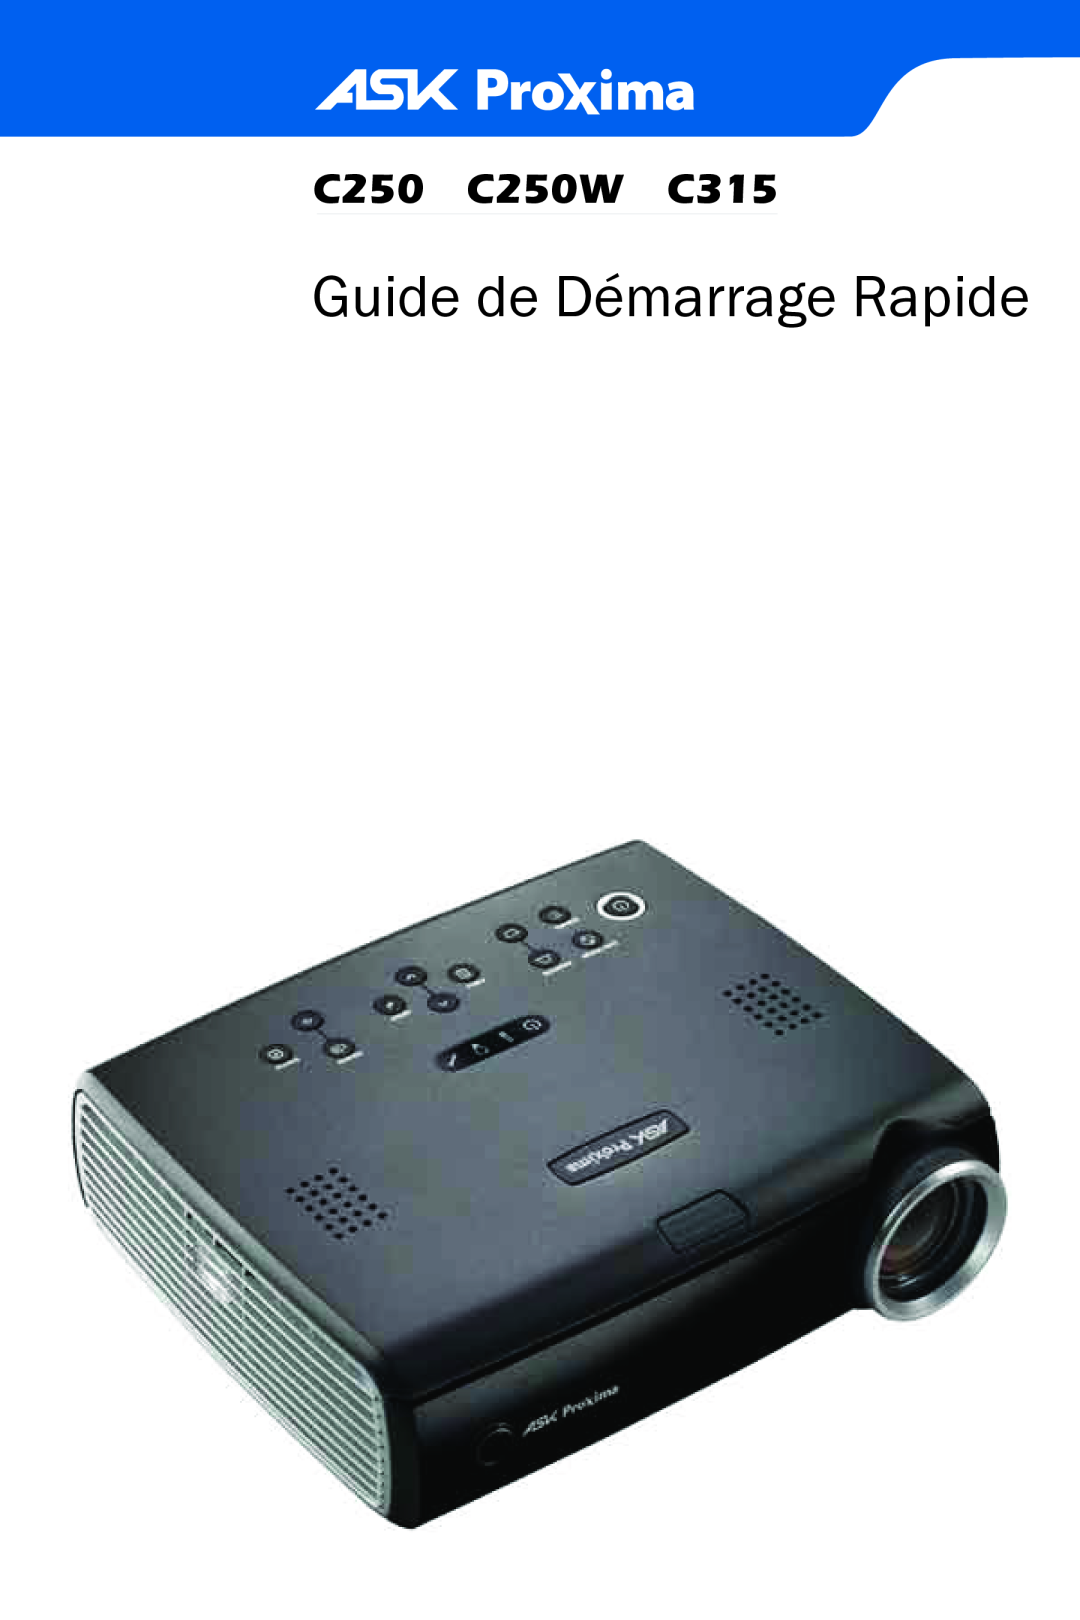 Ask Proxima manual Guide de Démarrage Rapide, C250 C250W C315 